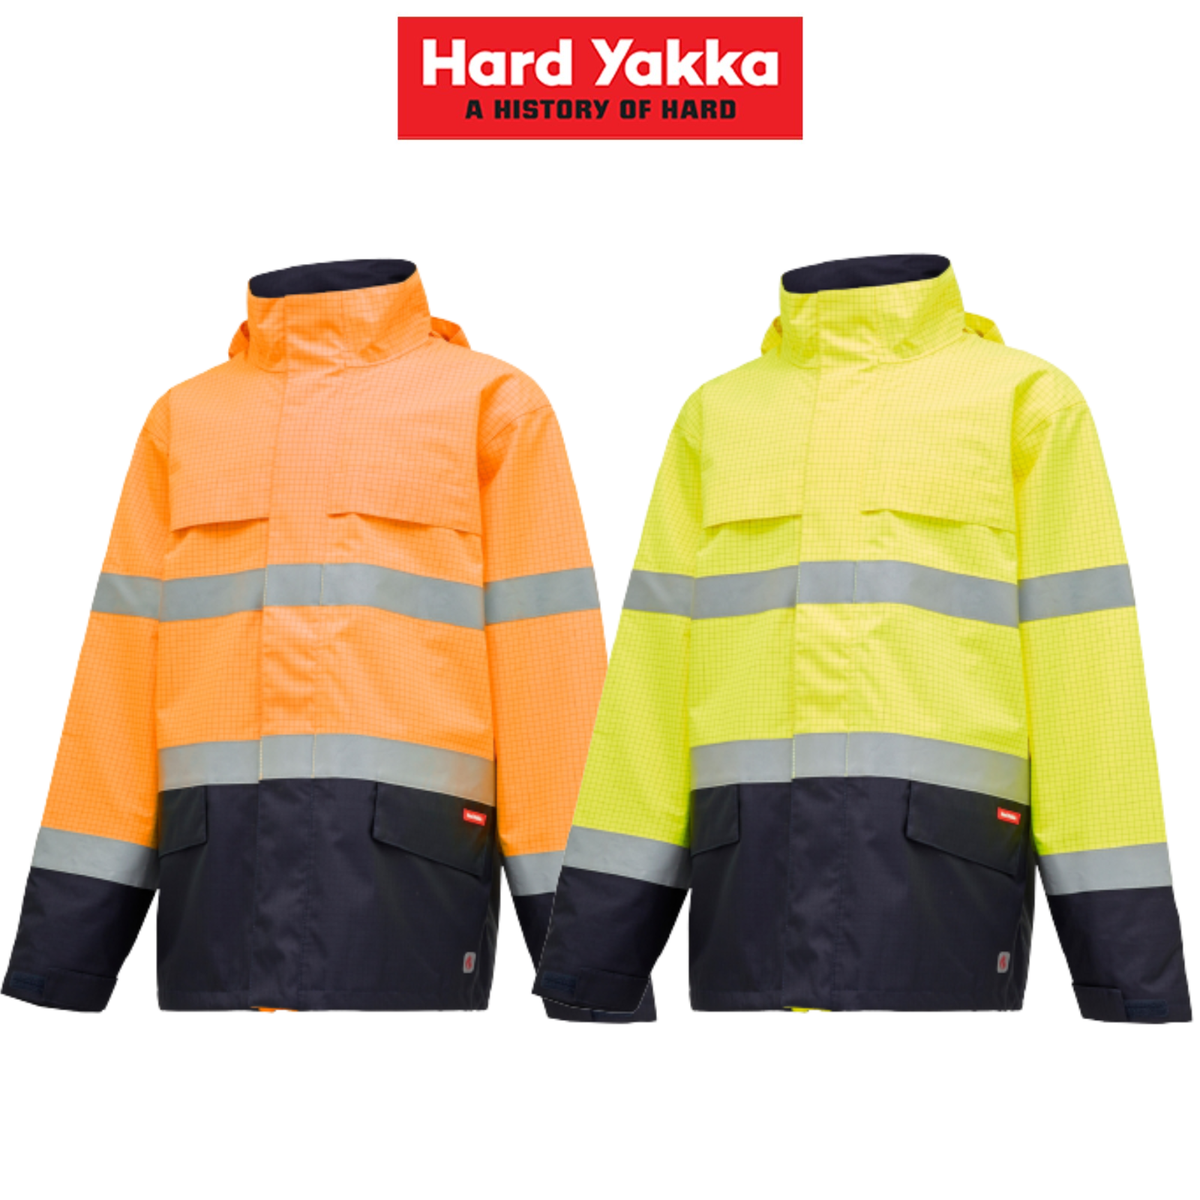 Hard Yakka Mens Antistatic Water Resistant Jacket Thermal Work Safety Y06730